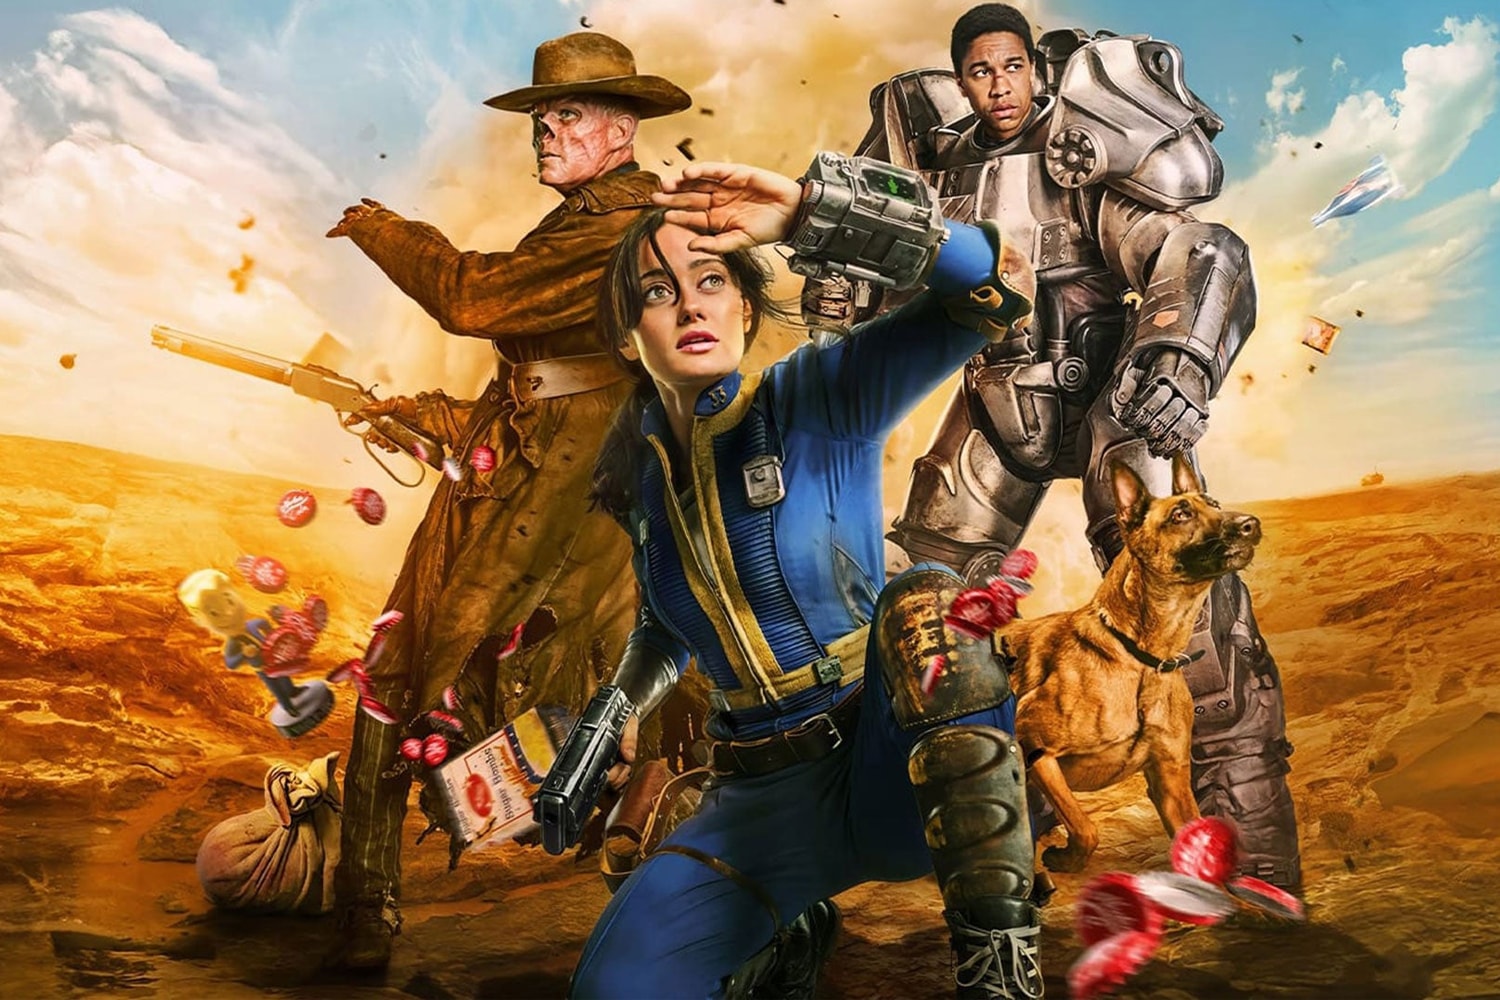 人氣影集《異塵餘生 Fallout》成為 Prime Video 收視率第二高作品